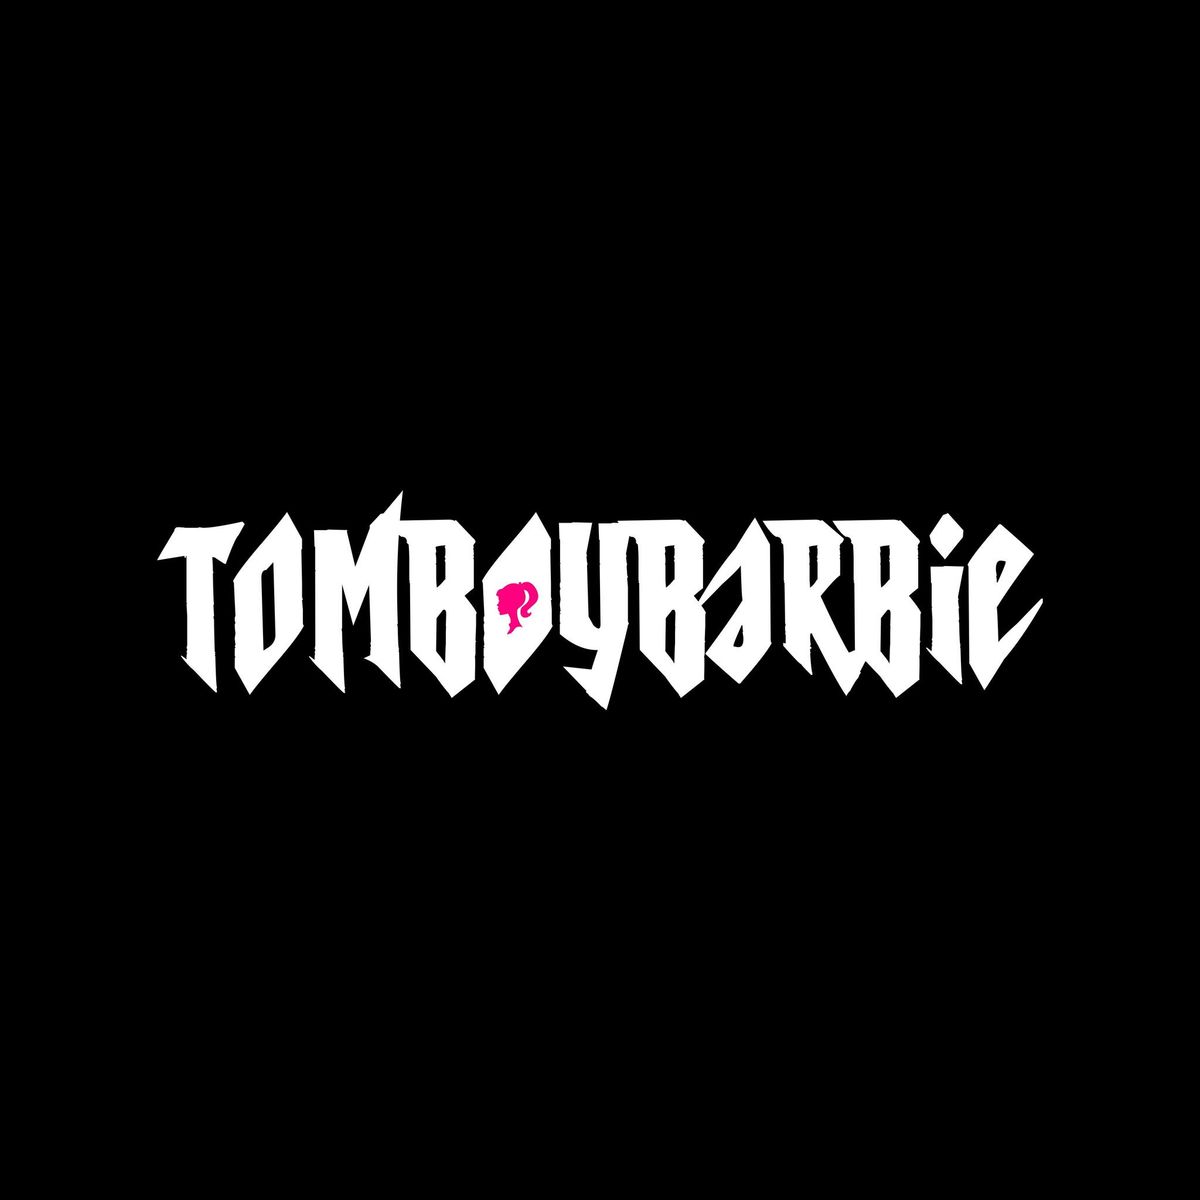 TomboyBarbie